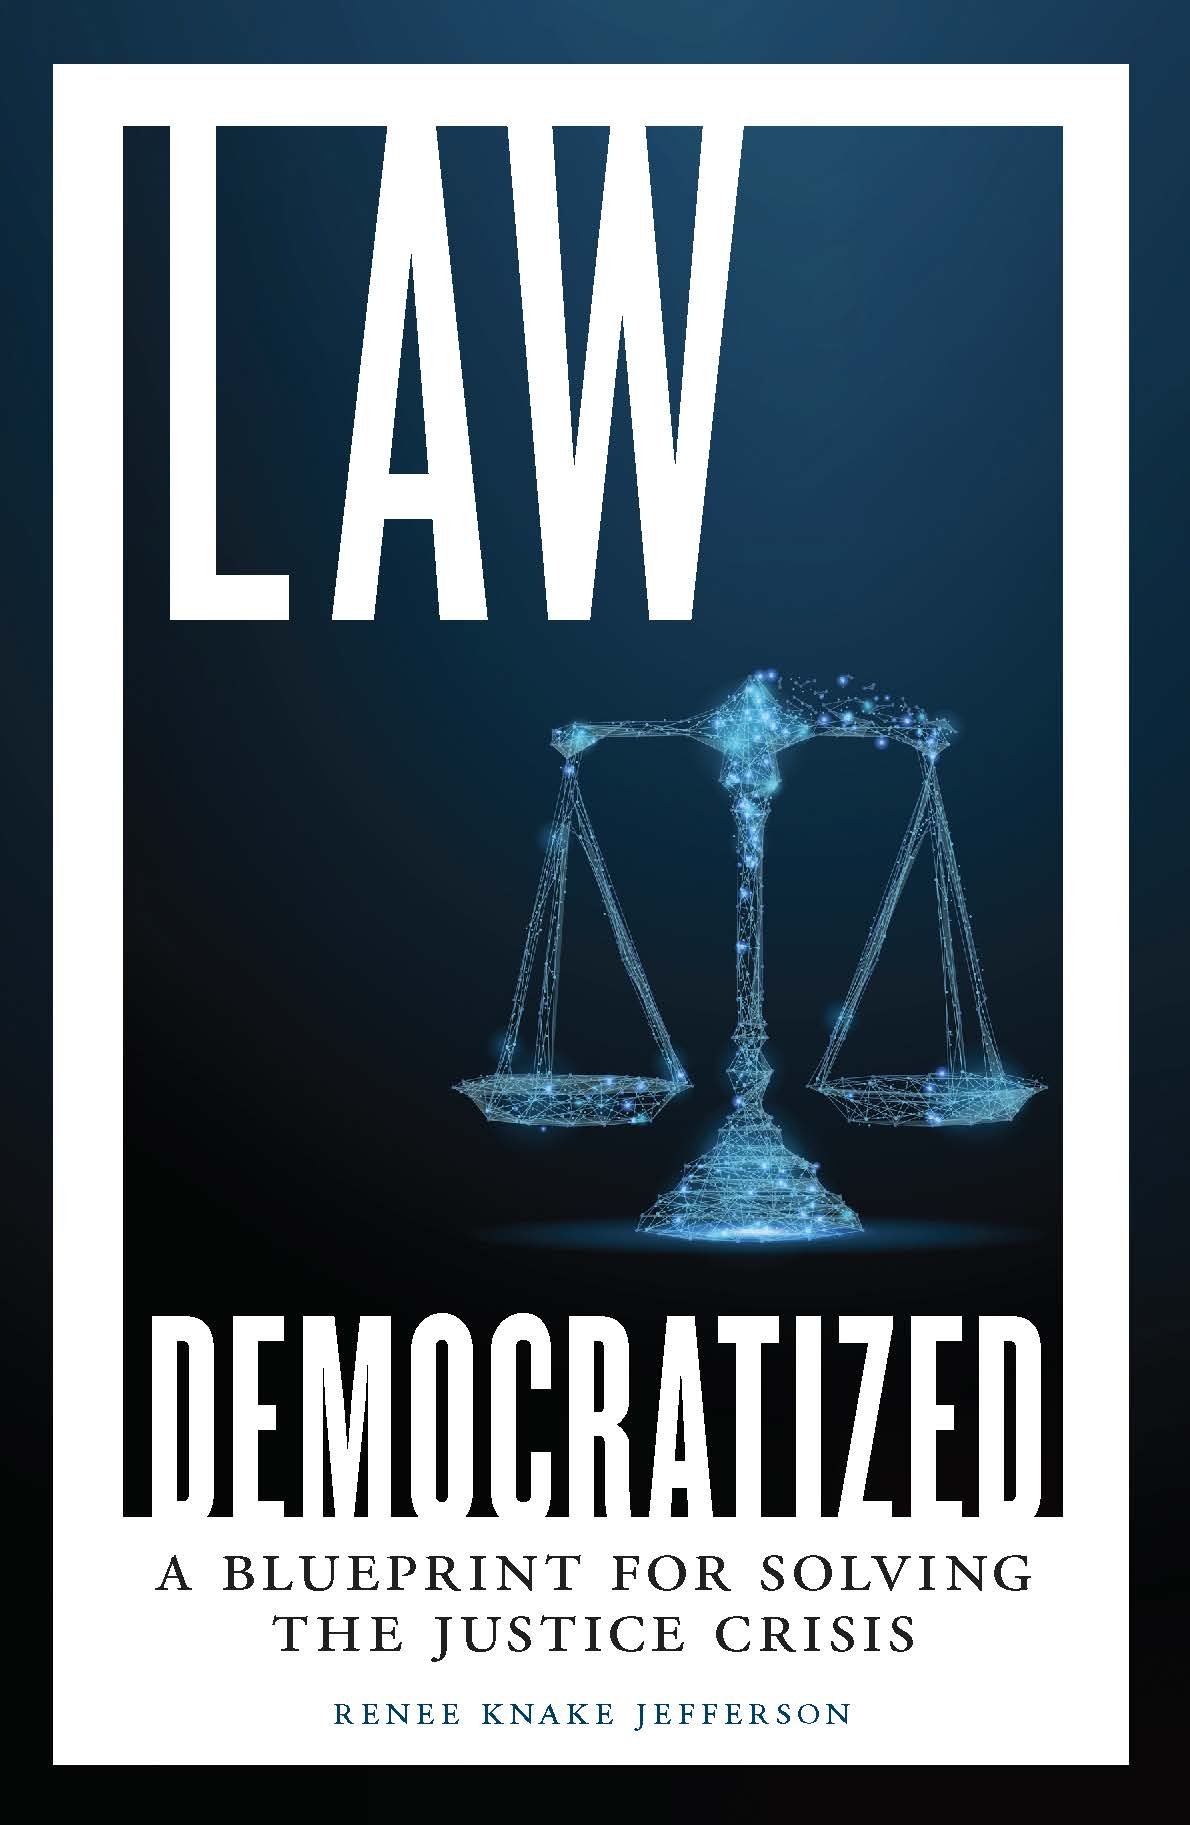 Law Democratized by Renee Knake Jefferson